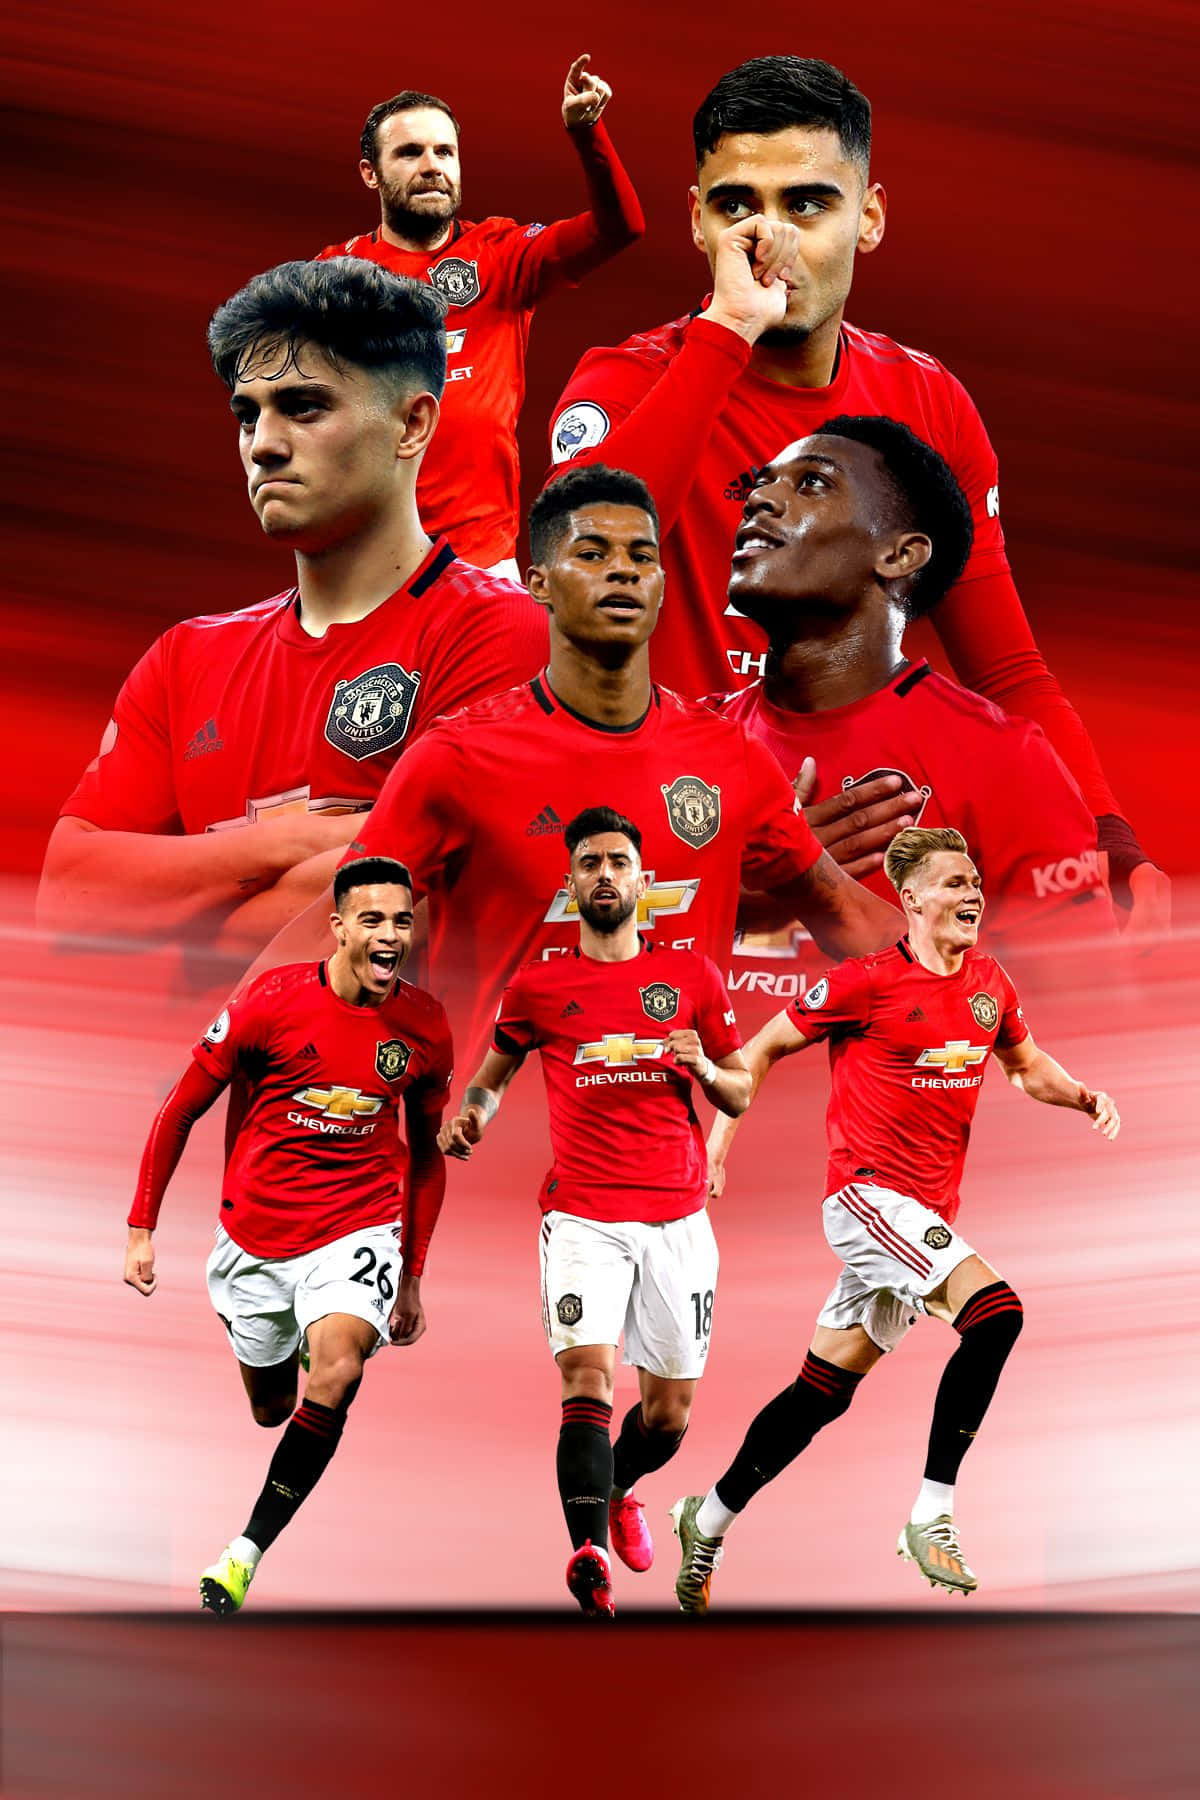 Den nye udseende for Manchester United - Genforenet i rødt Wallpaper